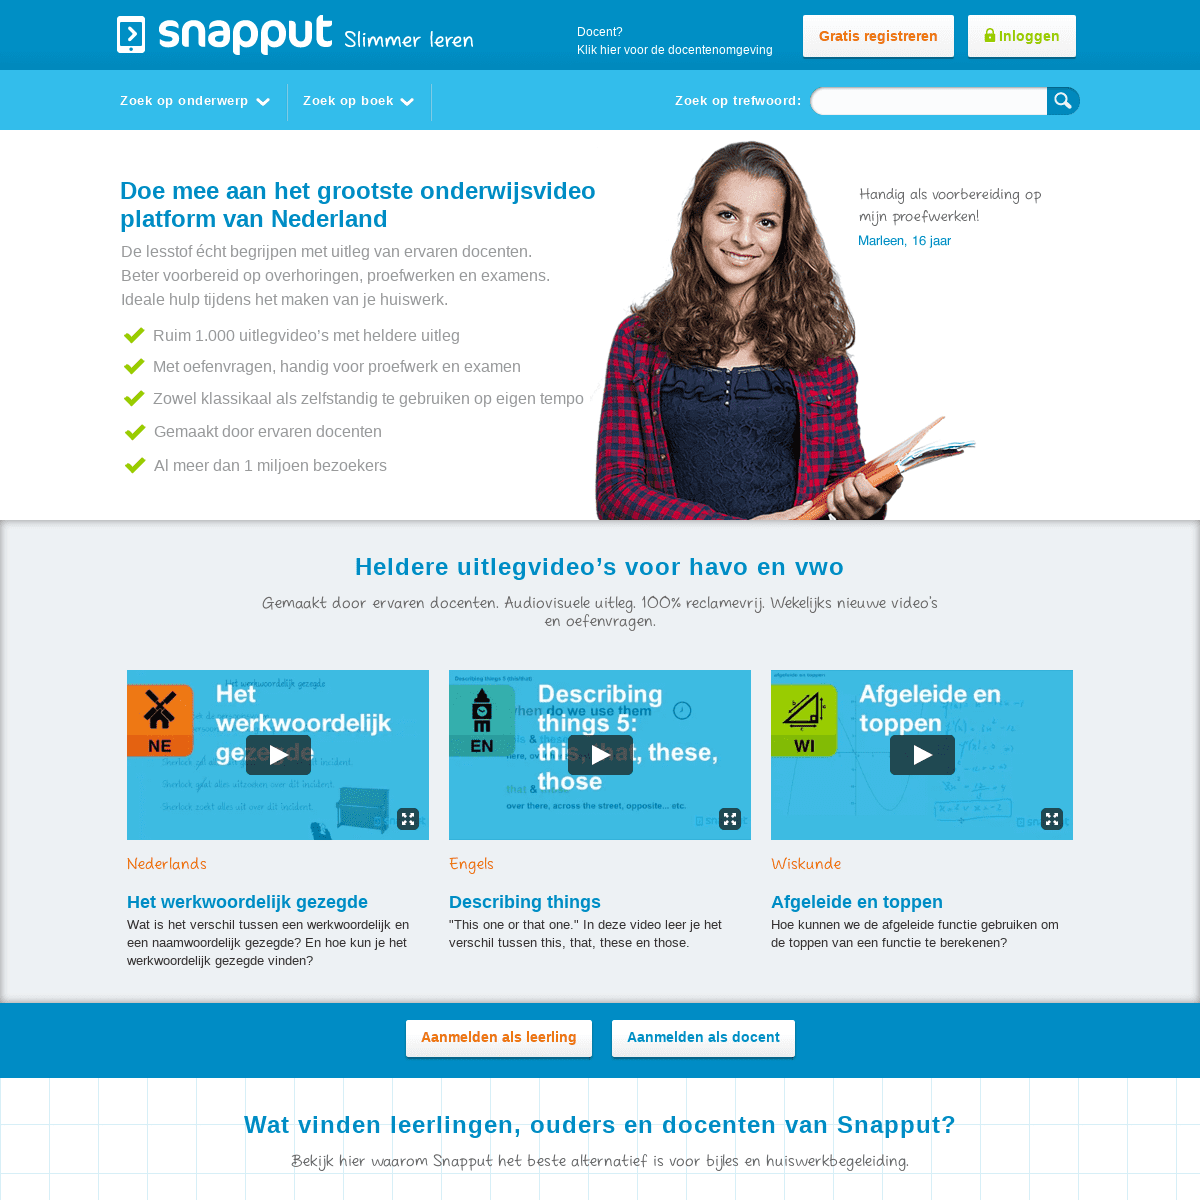 www.snapput.nl: Slimmer leren met Snapput